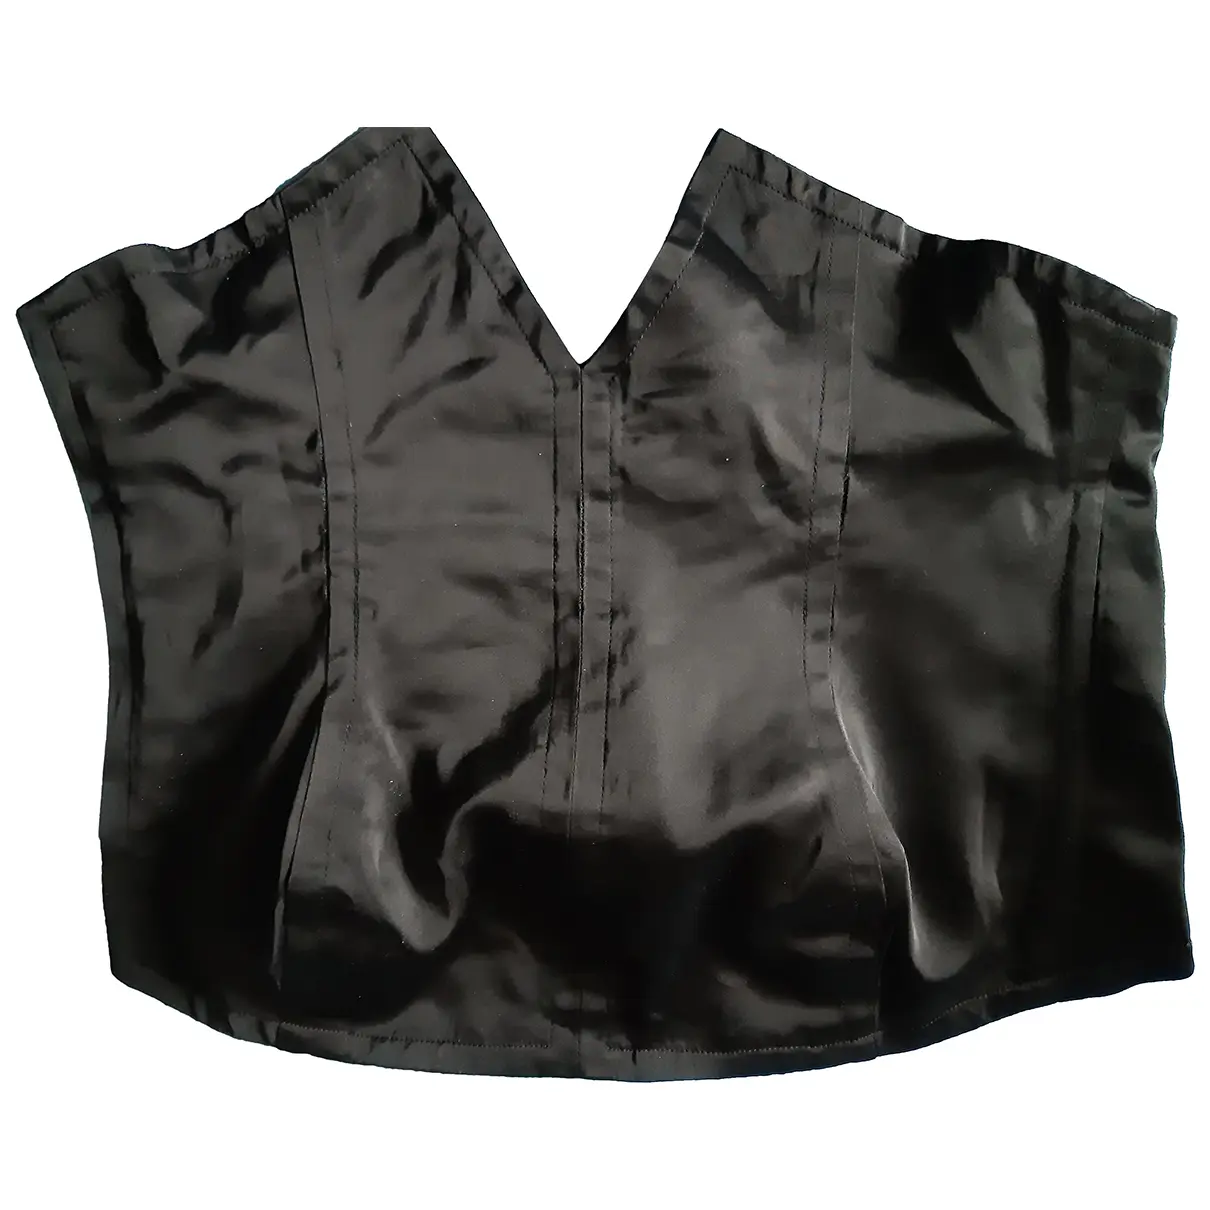 Silk corset Yves Saint Laurent - Vintage